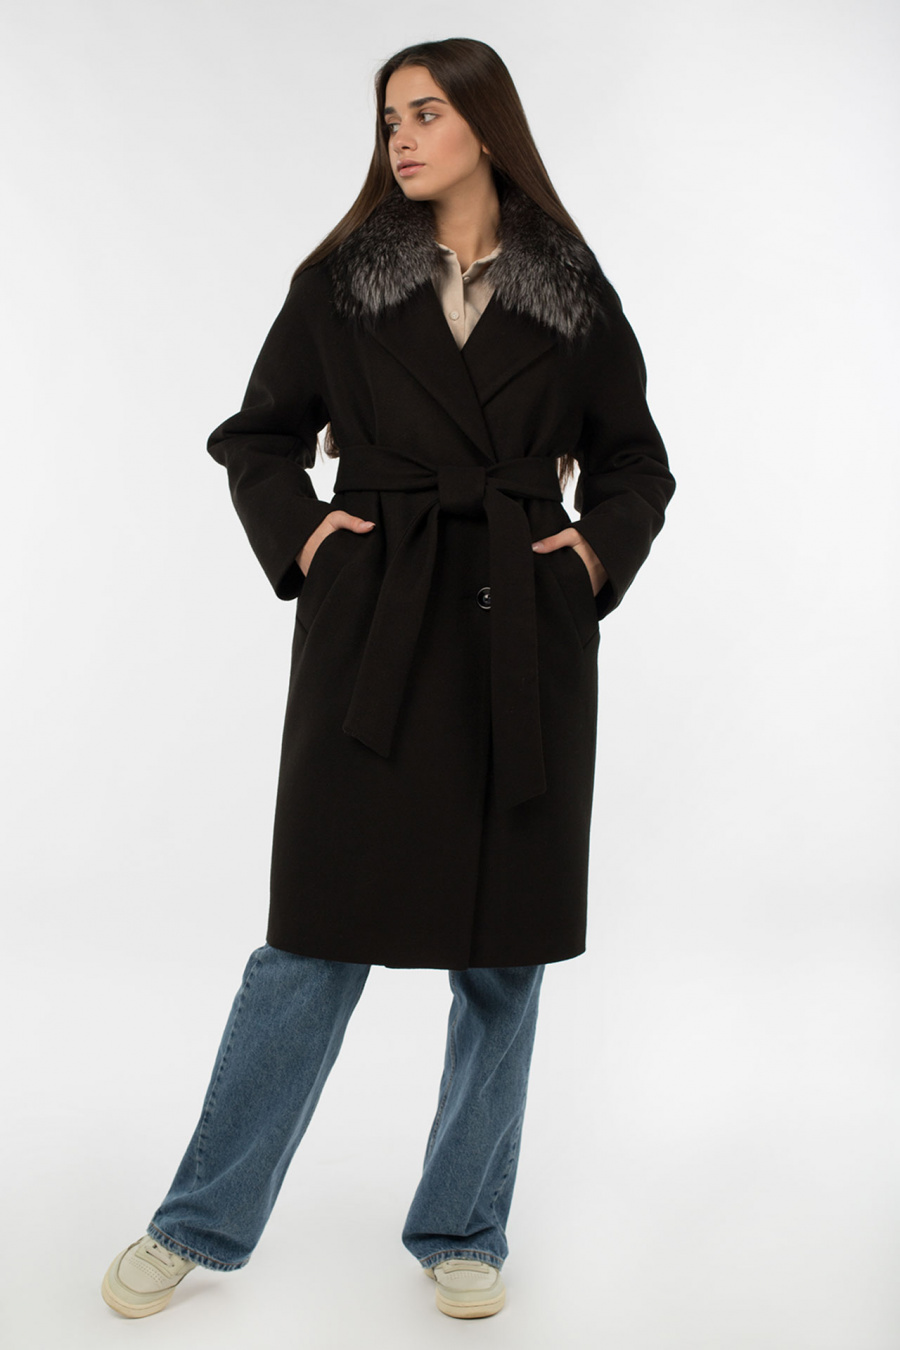 02-3063 Пальто женское утепленное (пояс) Микроворса черный